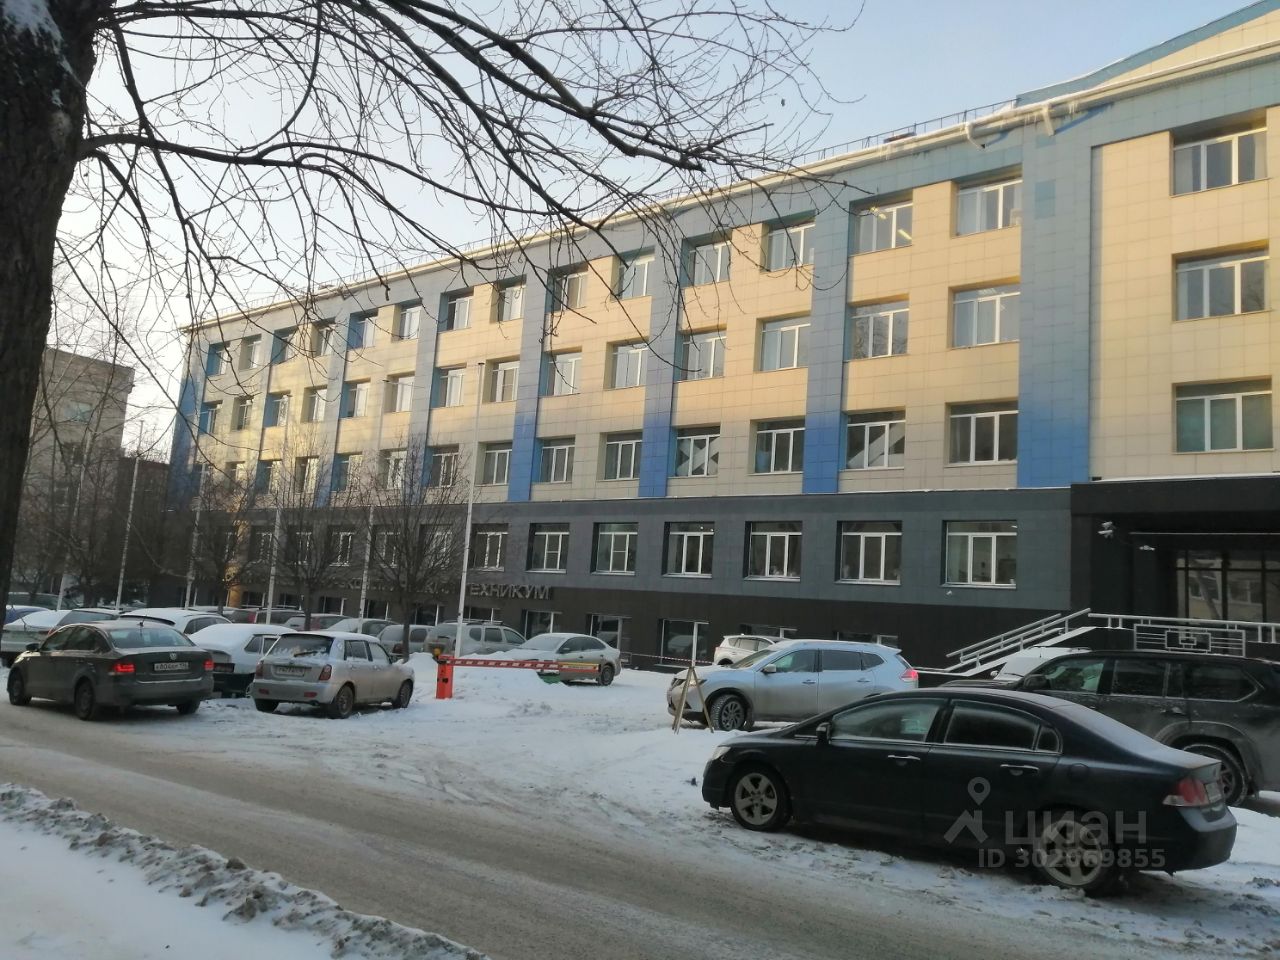 Офис 30.7 кв.м на 4 этаже в Екатеринбурге. Современное здание с парковкой. Без отделки. Удобное расположение.